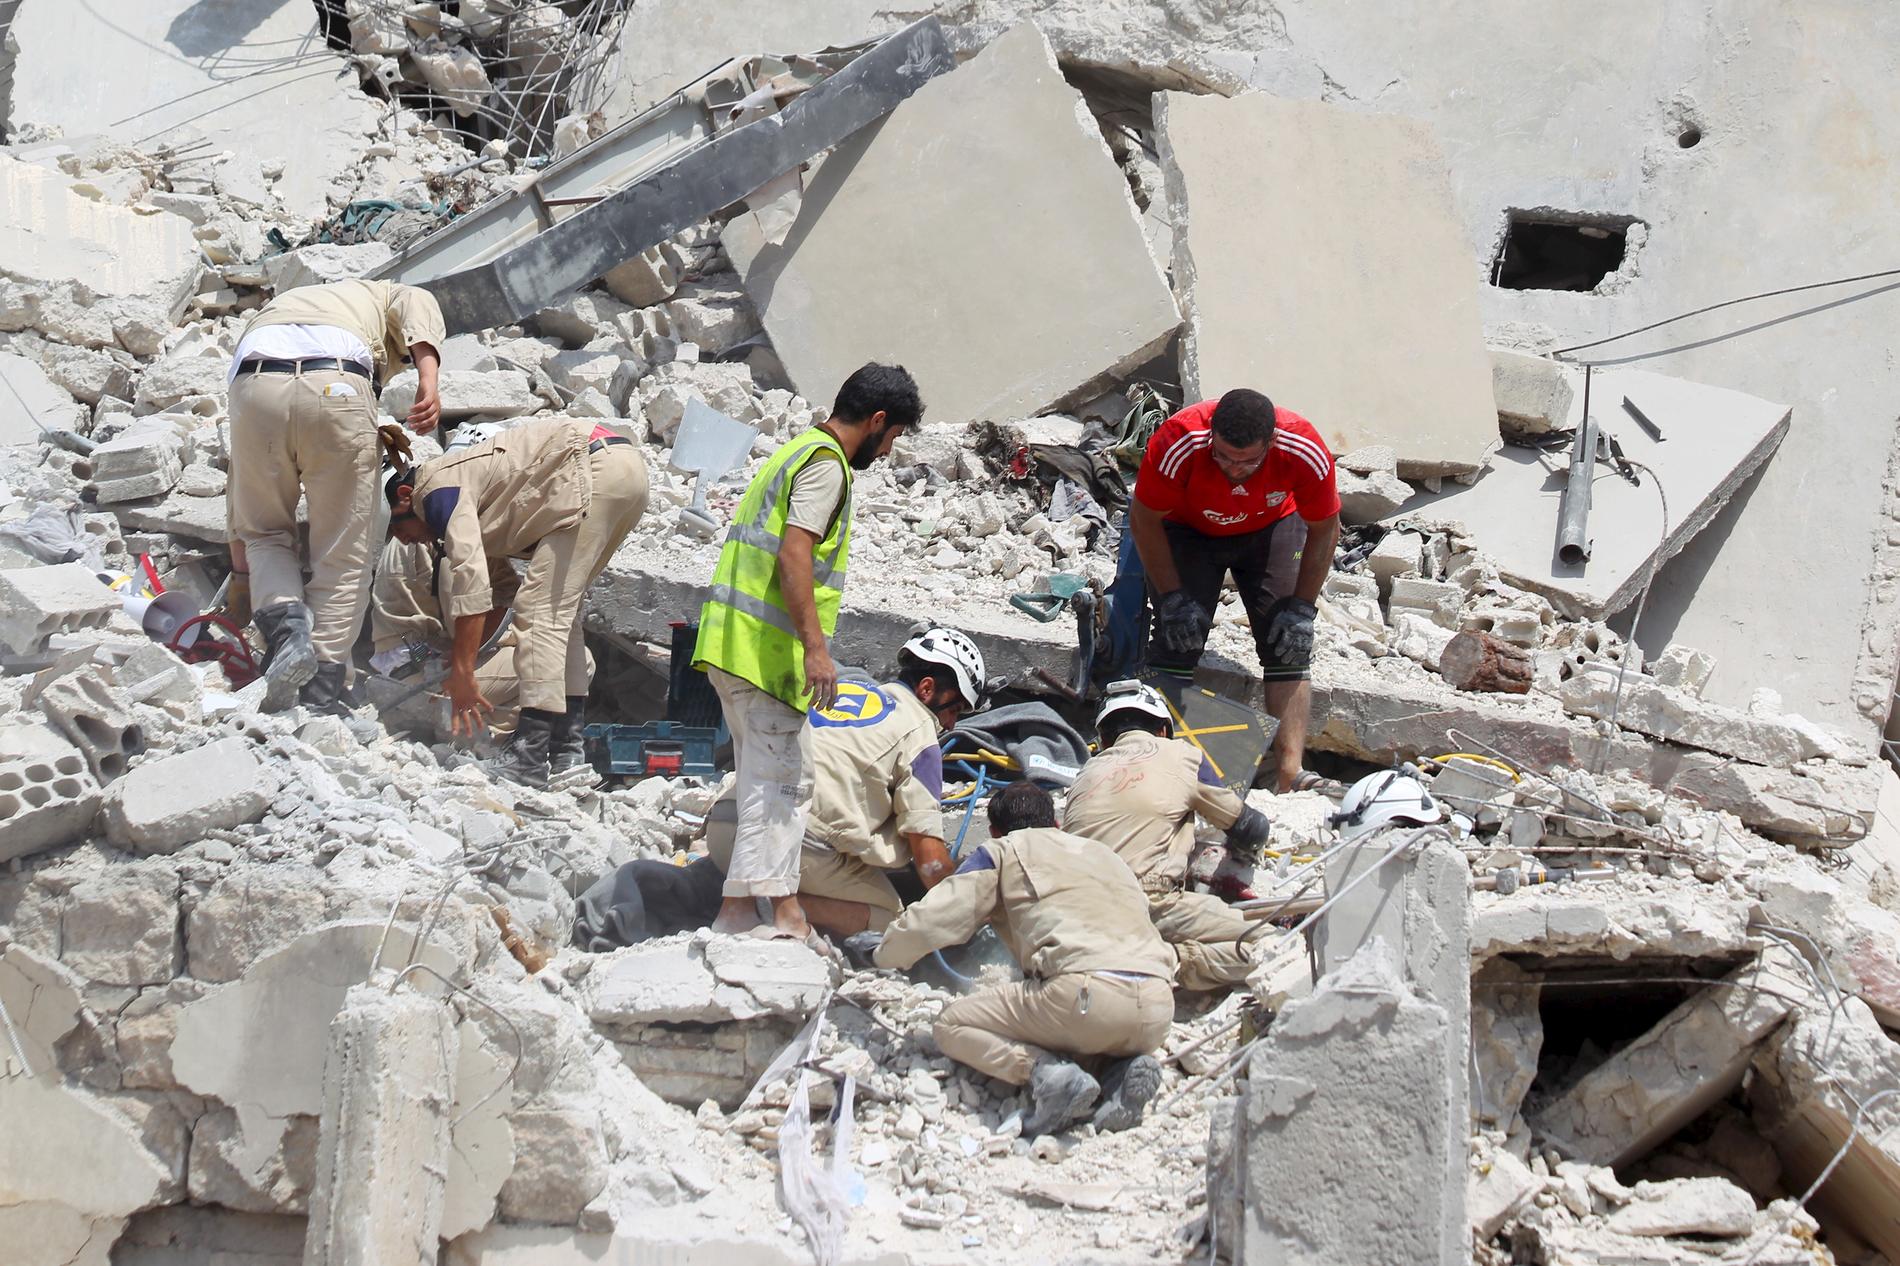 Minst 27 personer dog när det syriska stridsflygplanet kraschade.